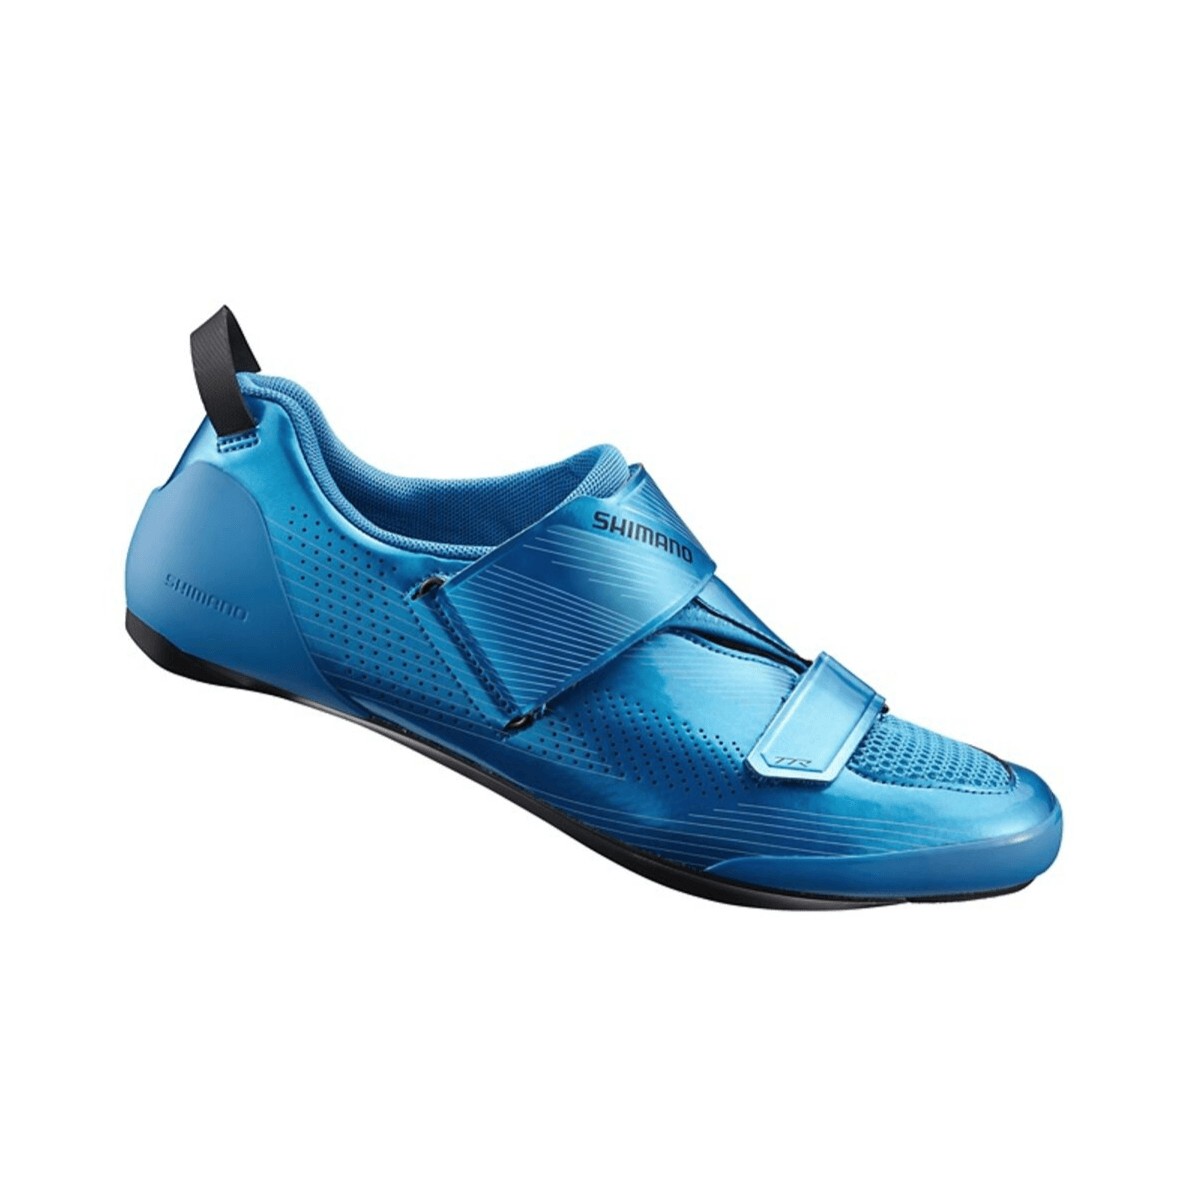 Shimano TR9 Triathlonschuhe blau, Größe 45,5 - EUR